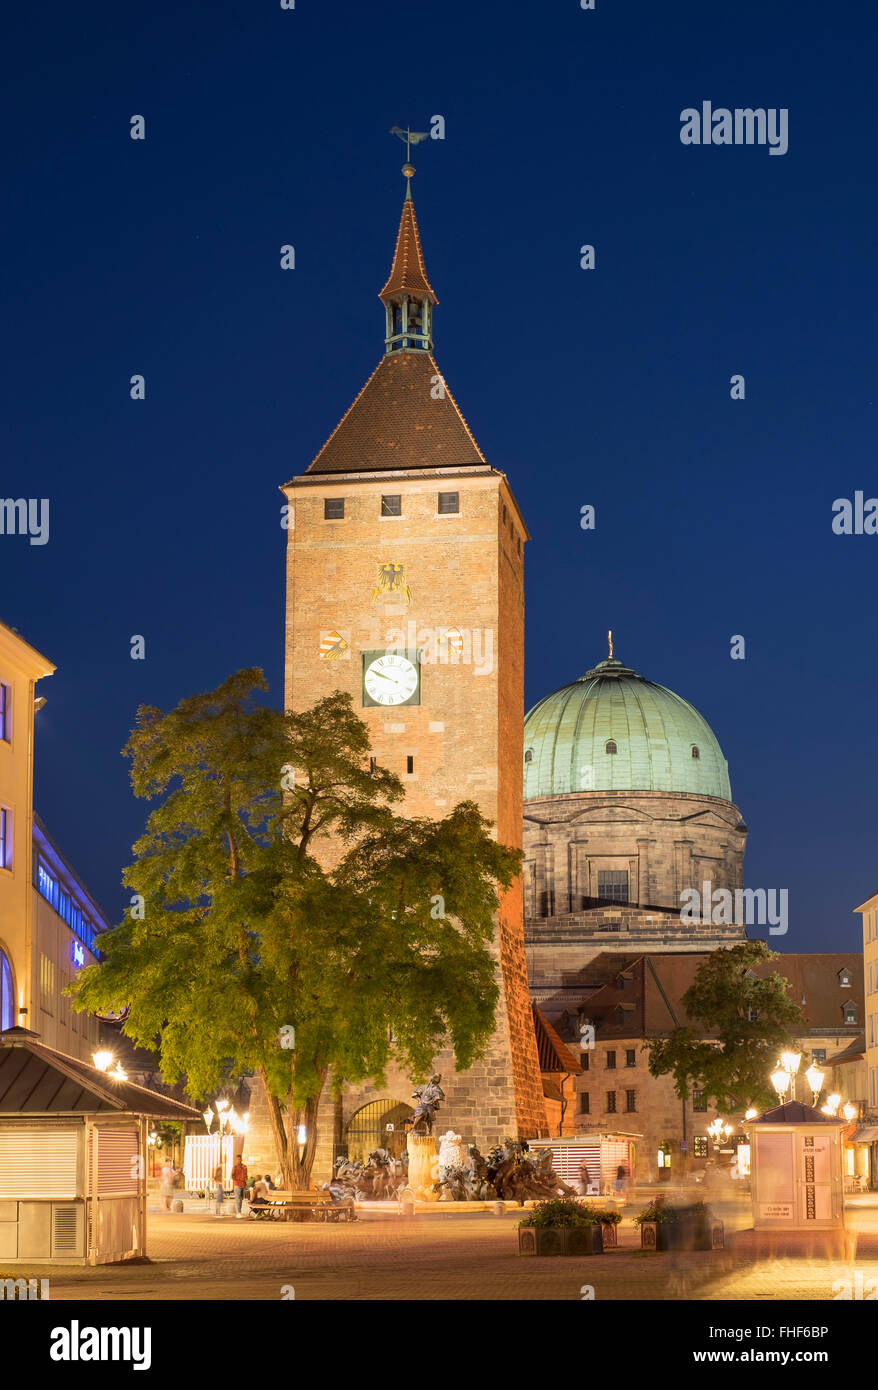 Tour blanche et à l'église Sainte Elisabeth de nuit, Lorenzer Altstadt, Nuremberg, Middle Franconia, Franconia, Bavaria, Germany Banque D'Images